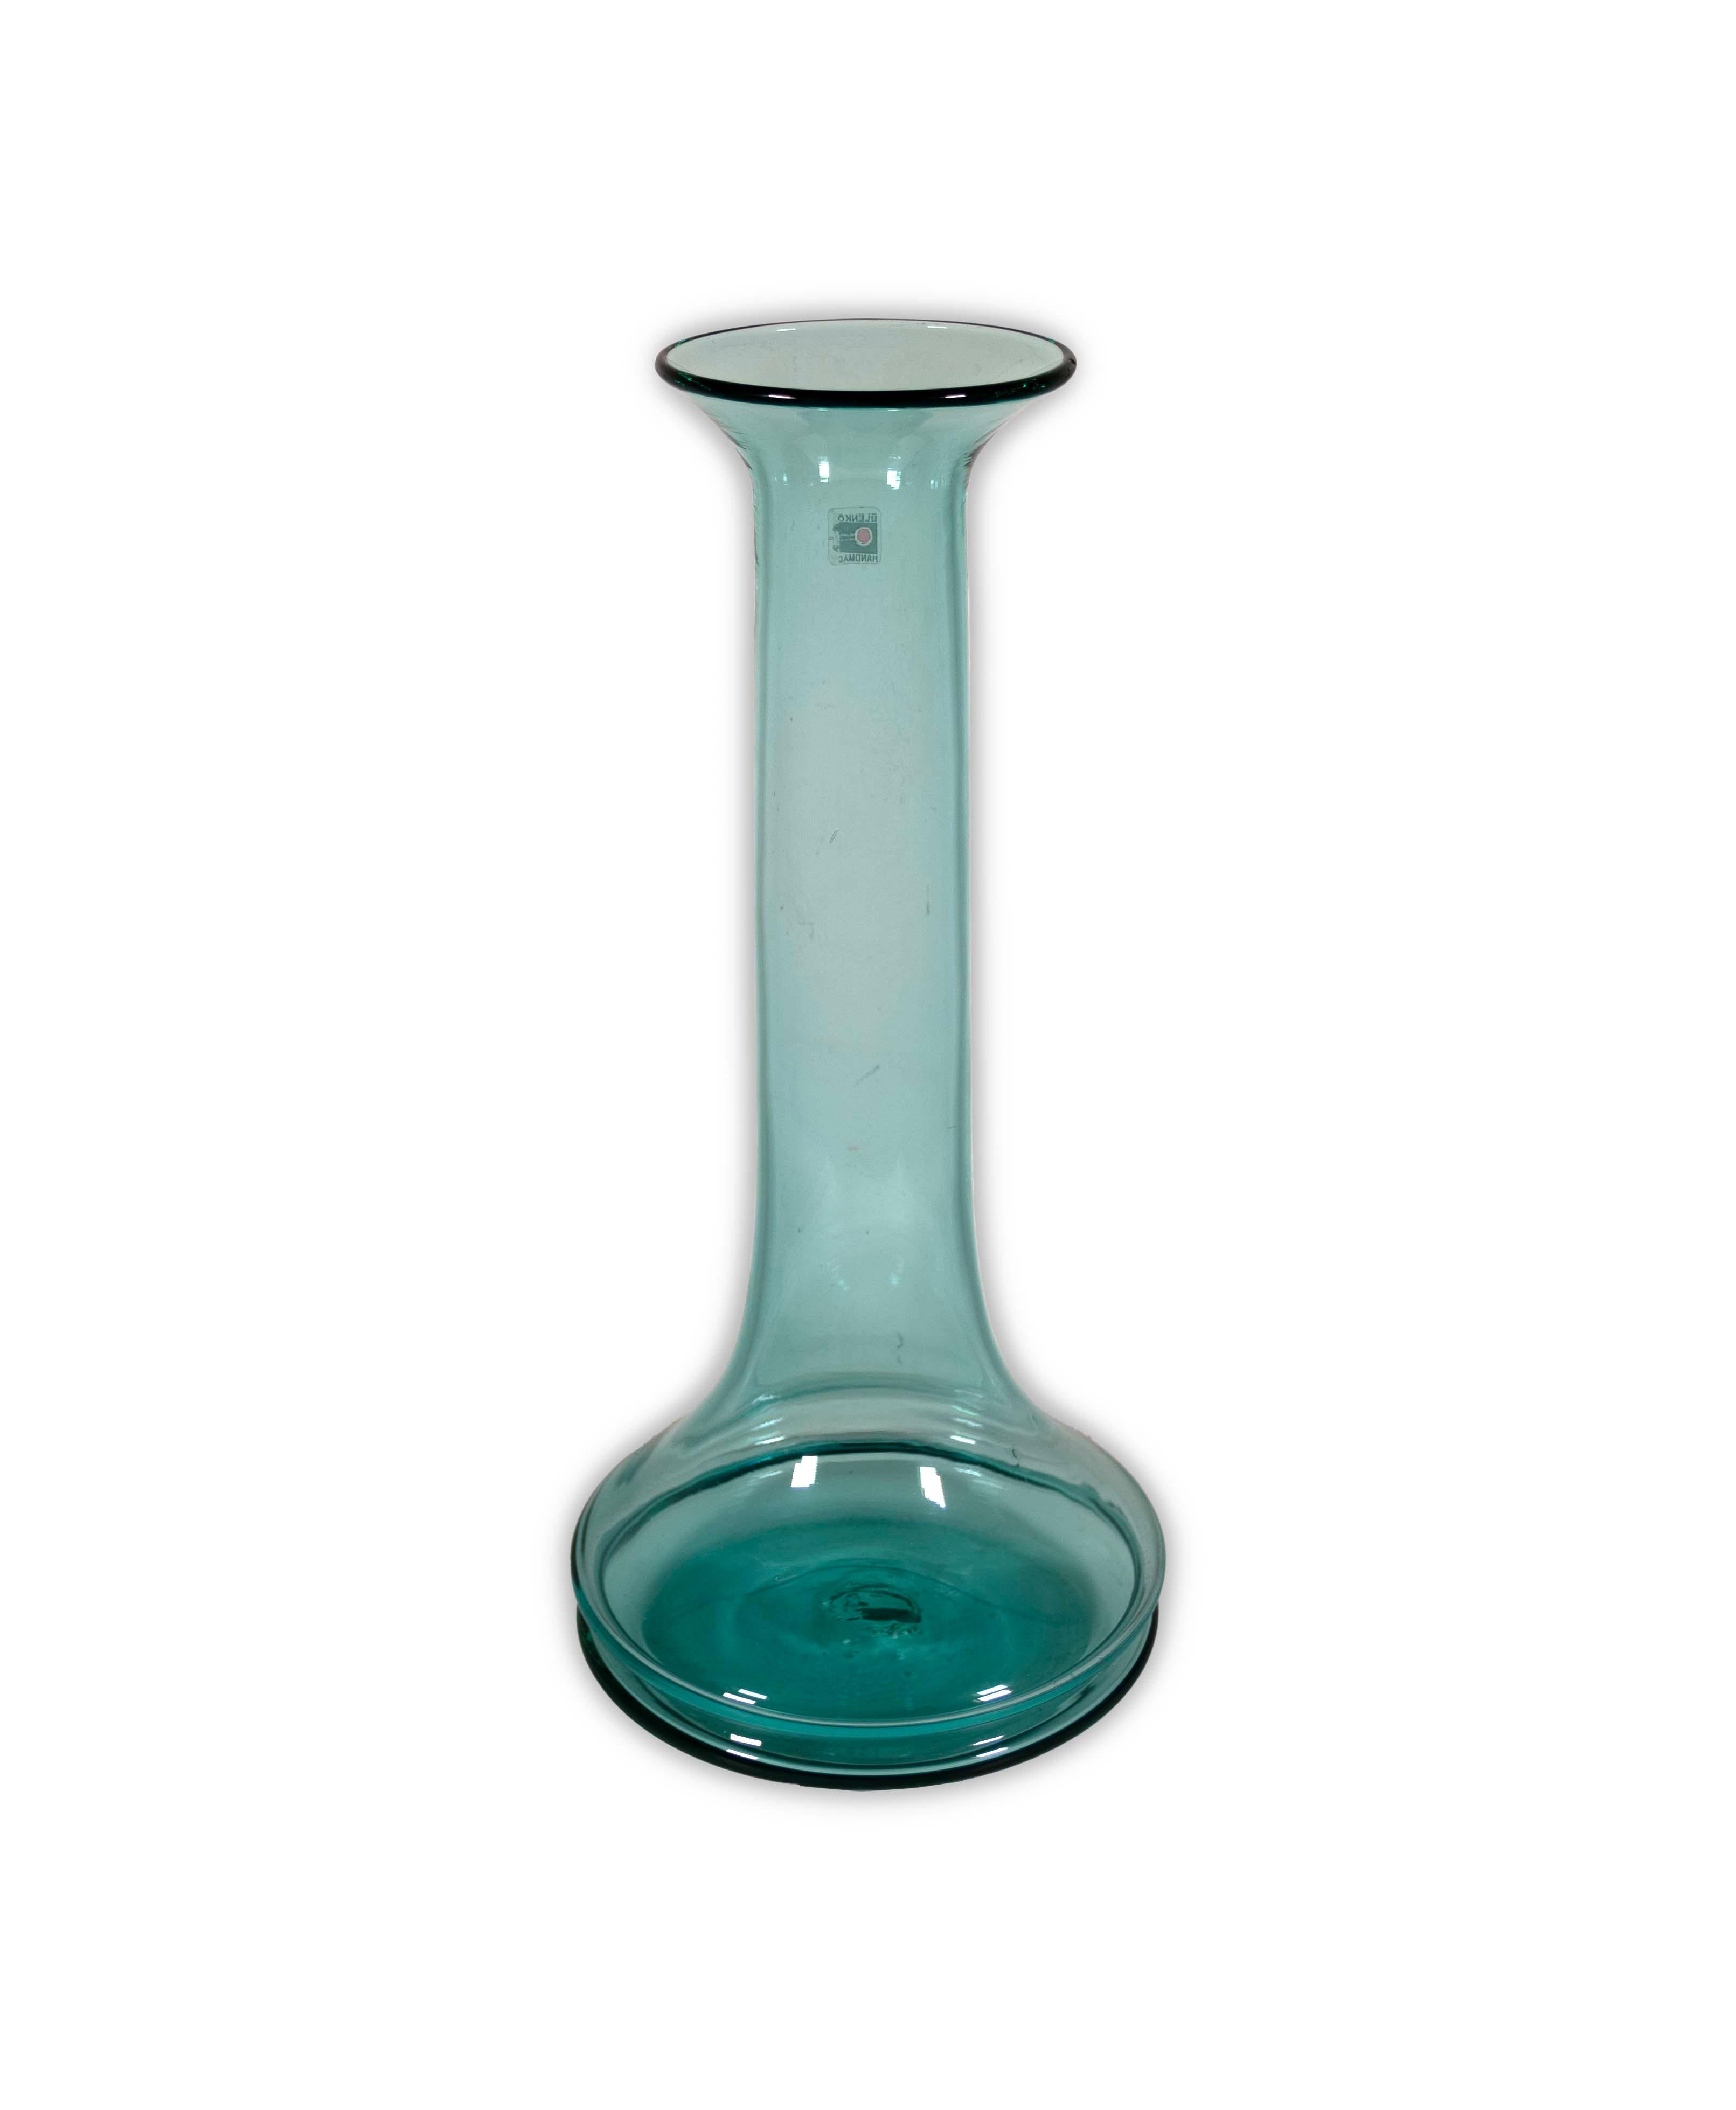  Le vase en verre turquoise de Don Shepherd pour Blenko, modèle 789M, est une pièce remarquable de l'art du verre moderne du milieu du siècle dernier. Collaboration entre la célèbre société de verre Blenko et Don Shepherd, ce vase présente un col